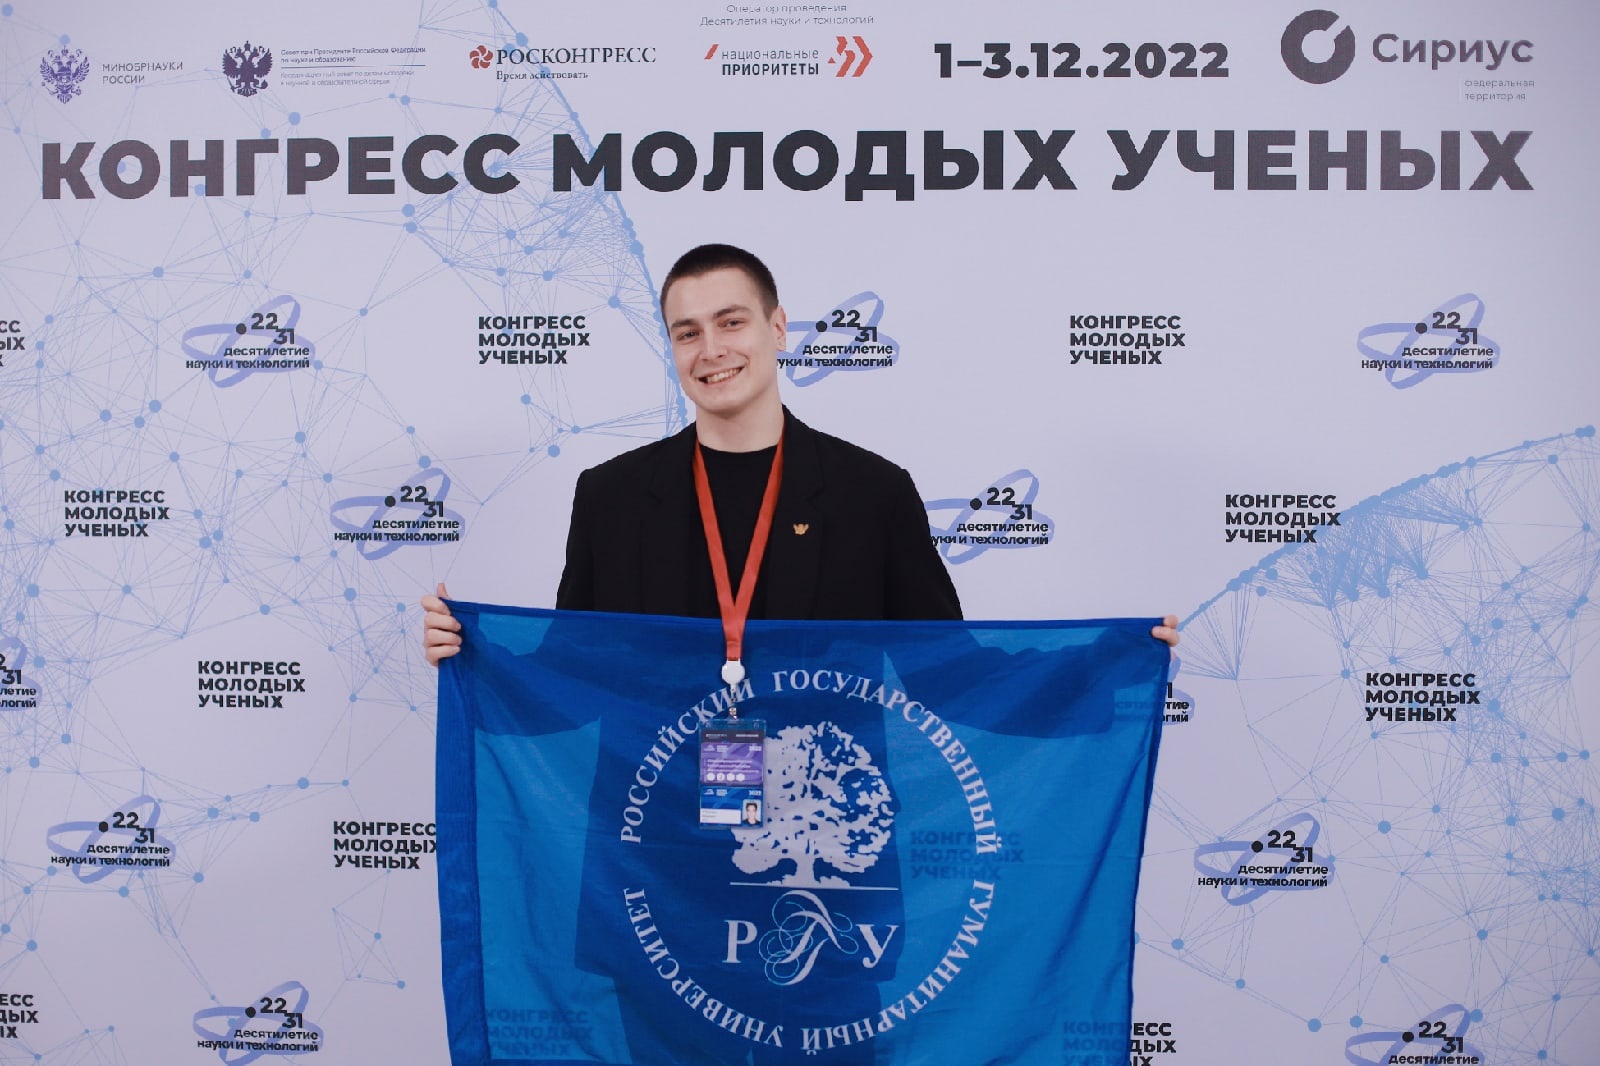 Студент РГГУ принял участие во II Конгрессе молодых ученых!